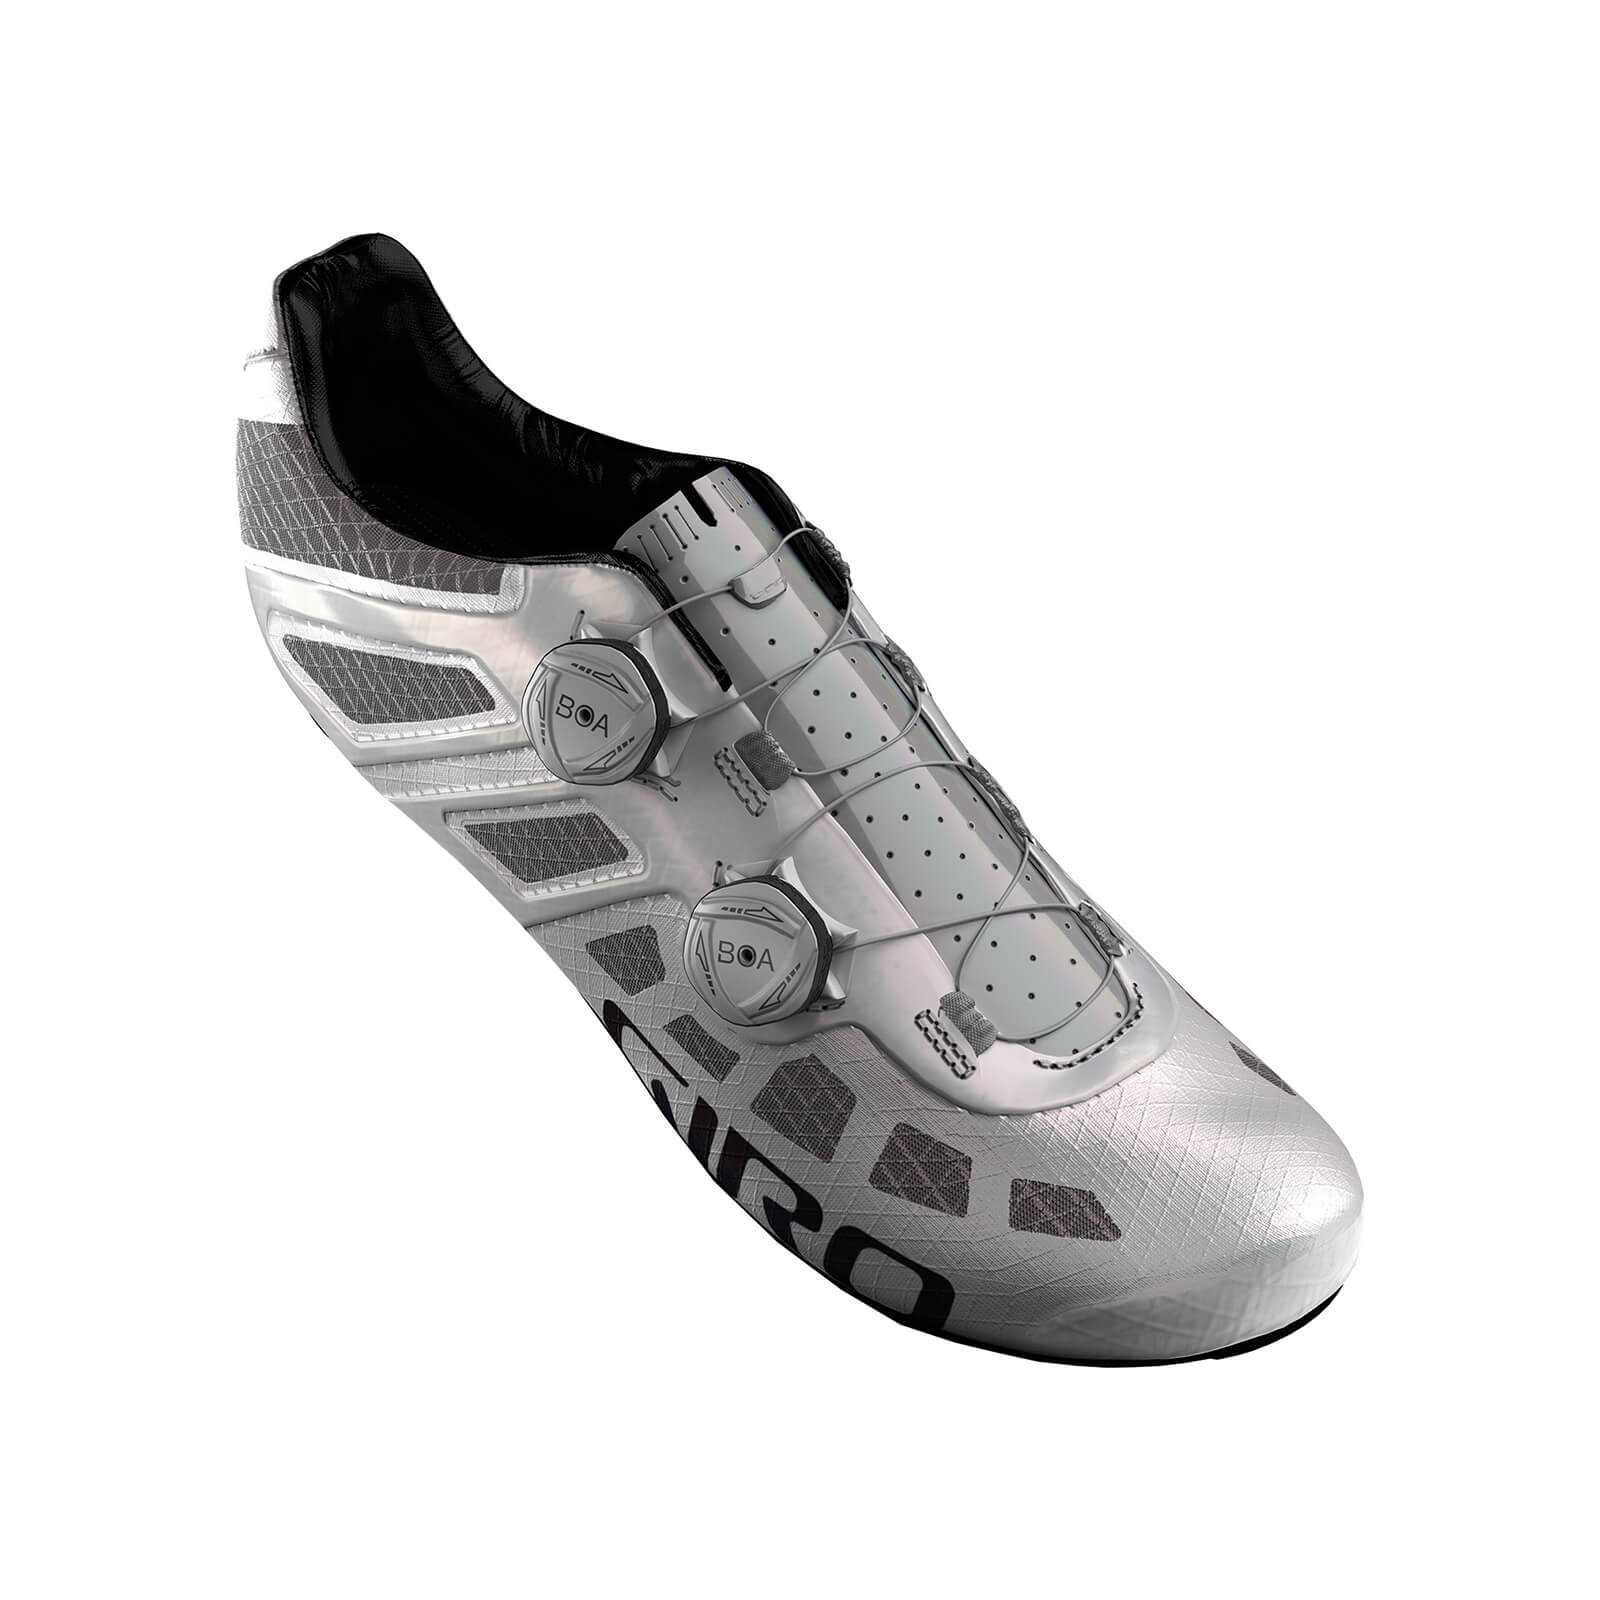 Giro Imperial Road Shoes - EU 44 - White